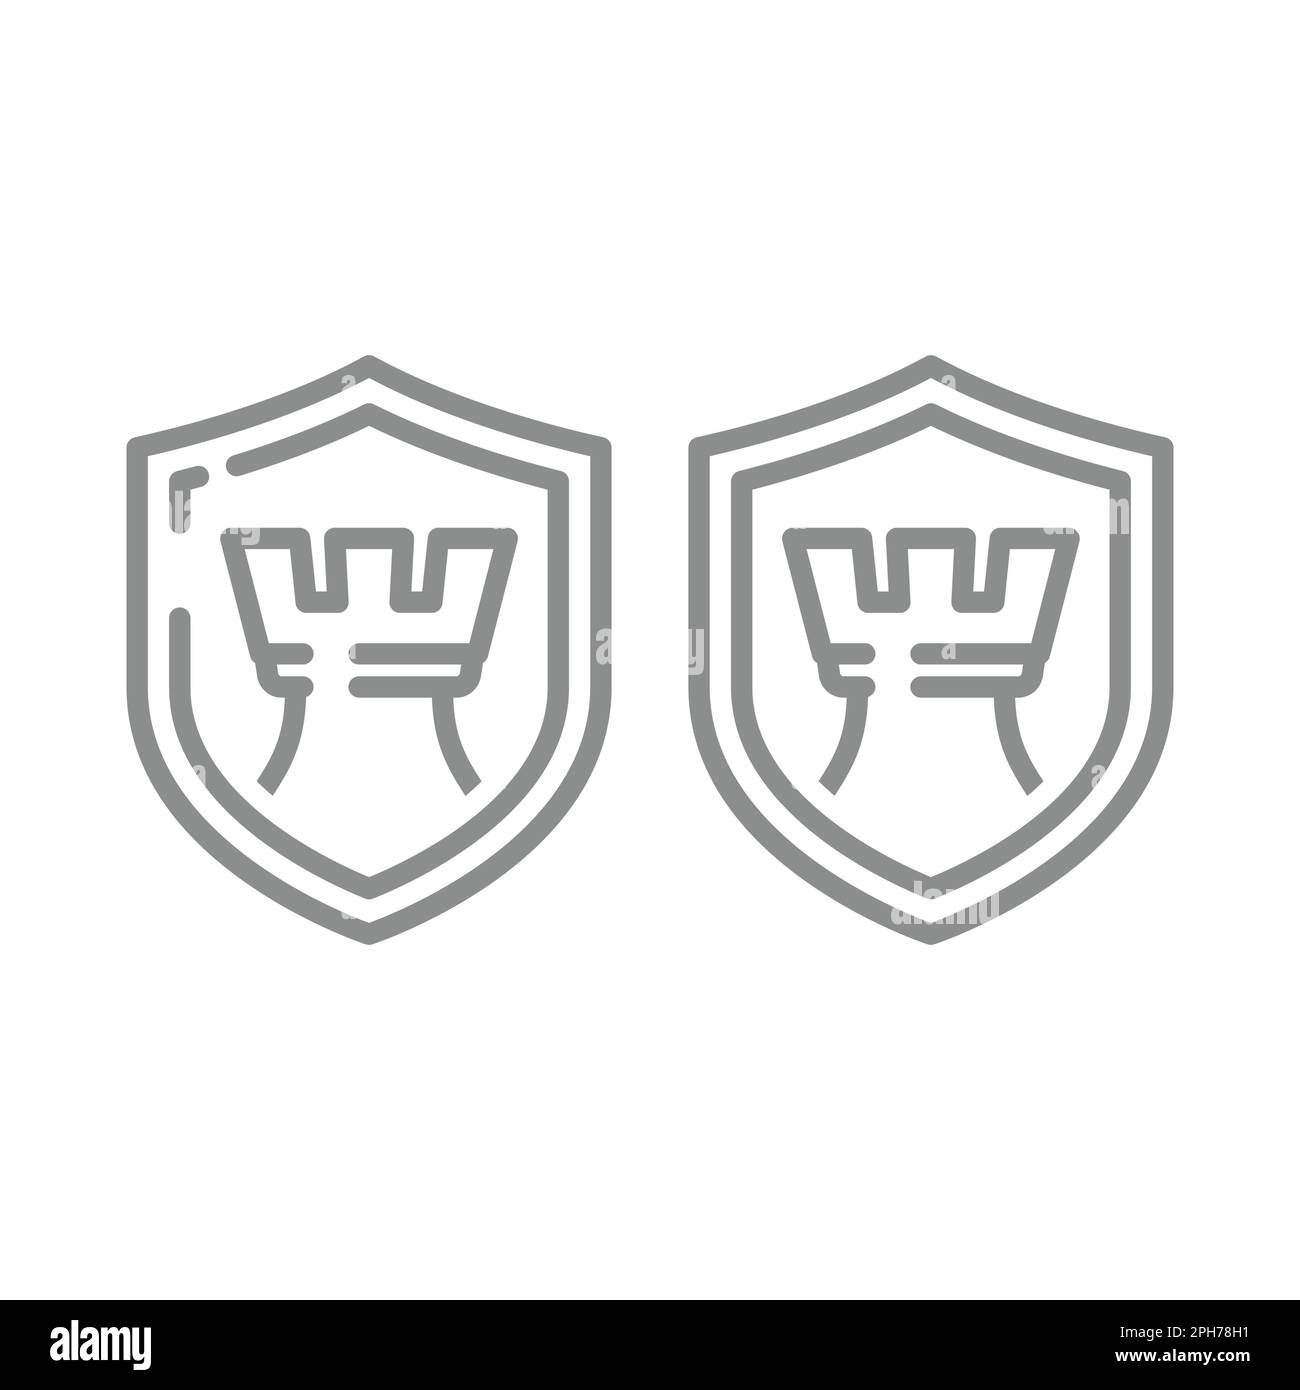 Pezzo di re di scacchi e icona dello scudo. Icone vettoriali protette, protette e sicure per linee concettuali. Illustrazione Vettoriale